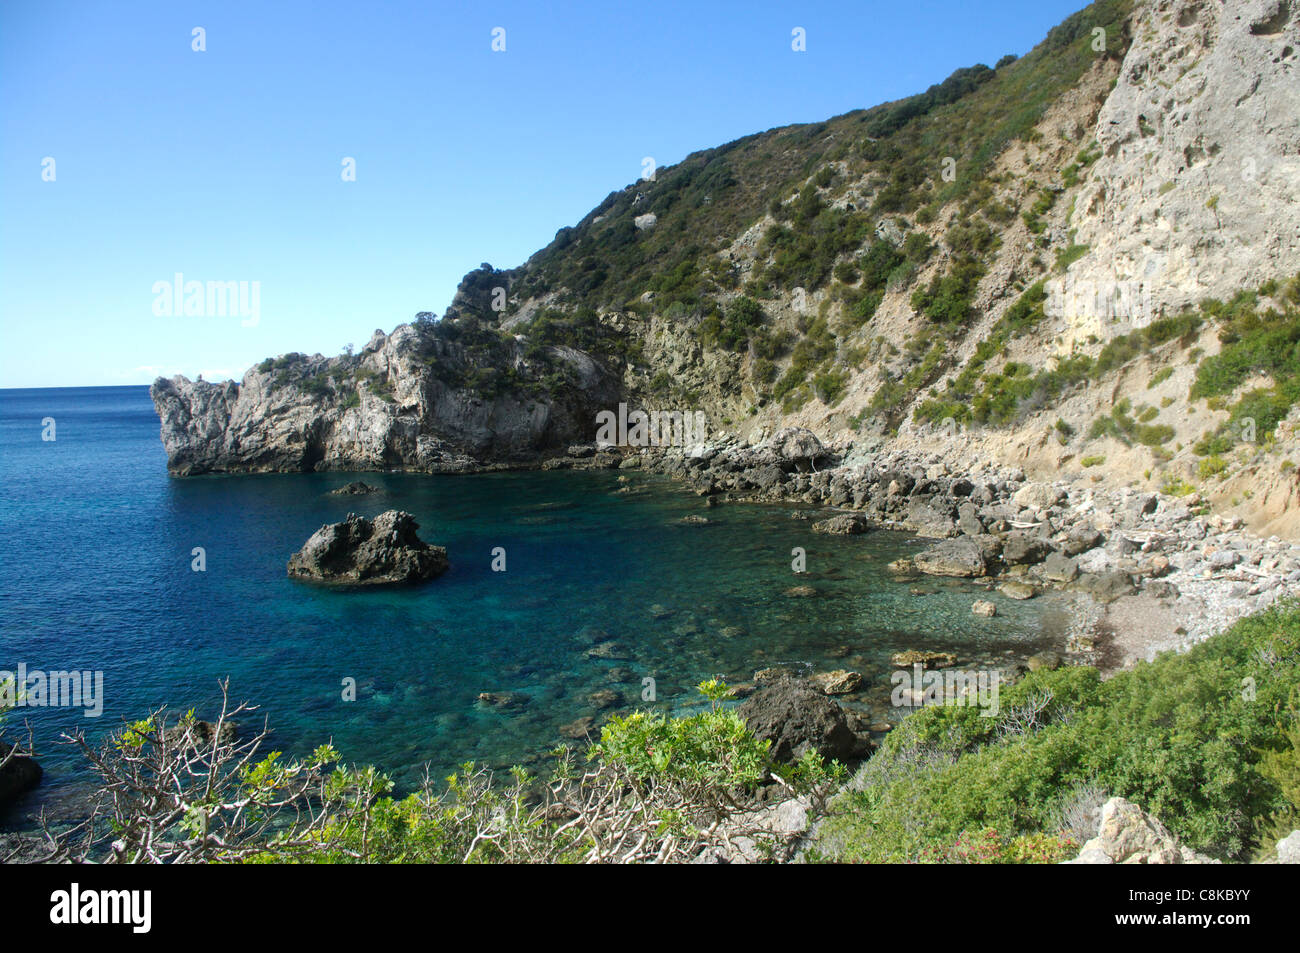 Allume cove and beach, Isola del Giglio, Tuscany, Italy Stock Photo